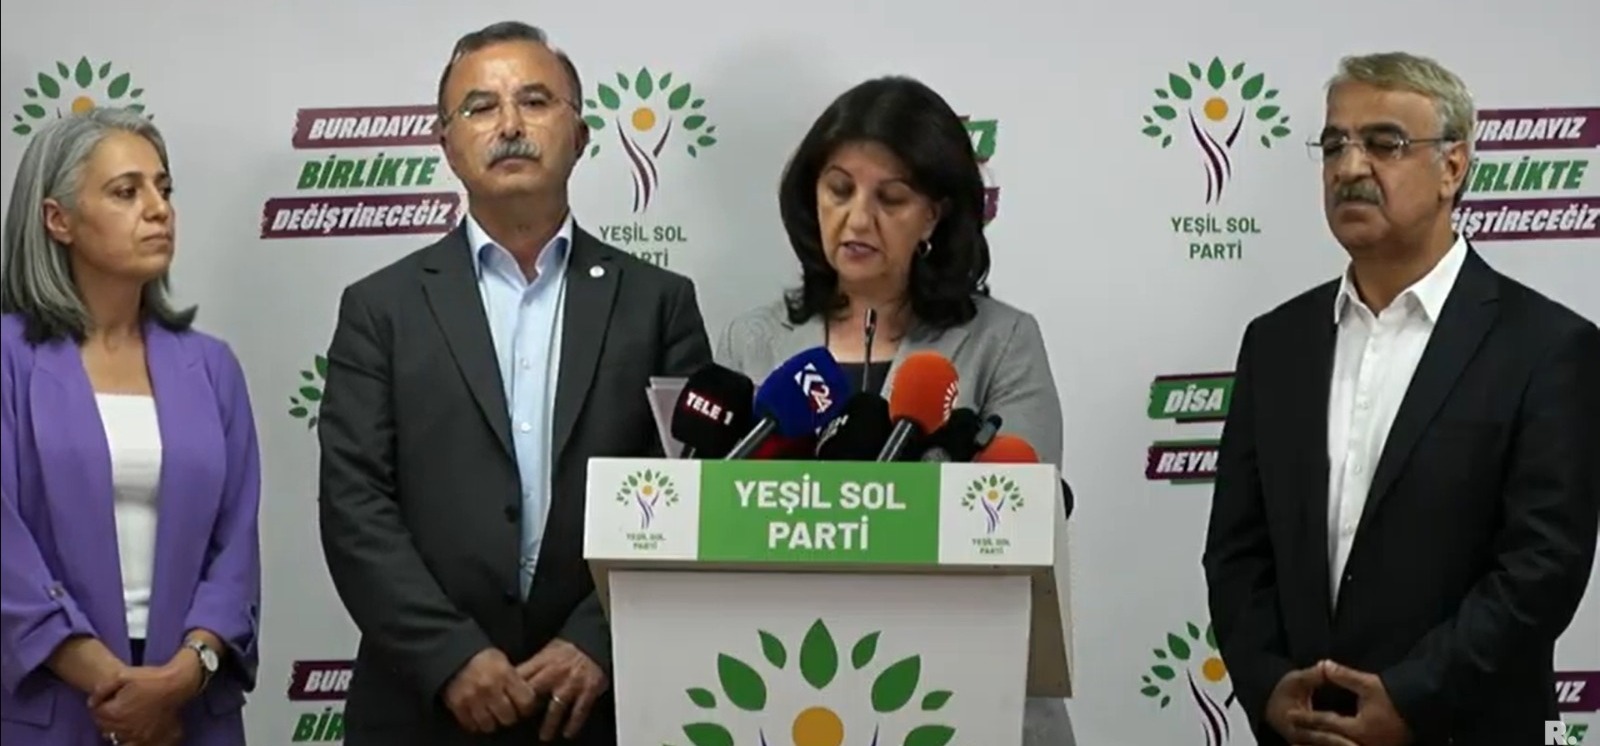 HDP ve Yeşil Sol, ikinci tur için tavrını açıkladı